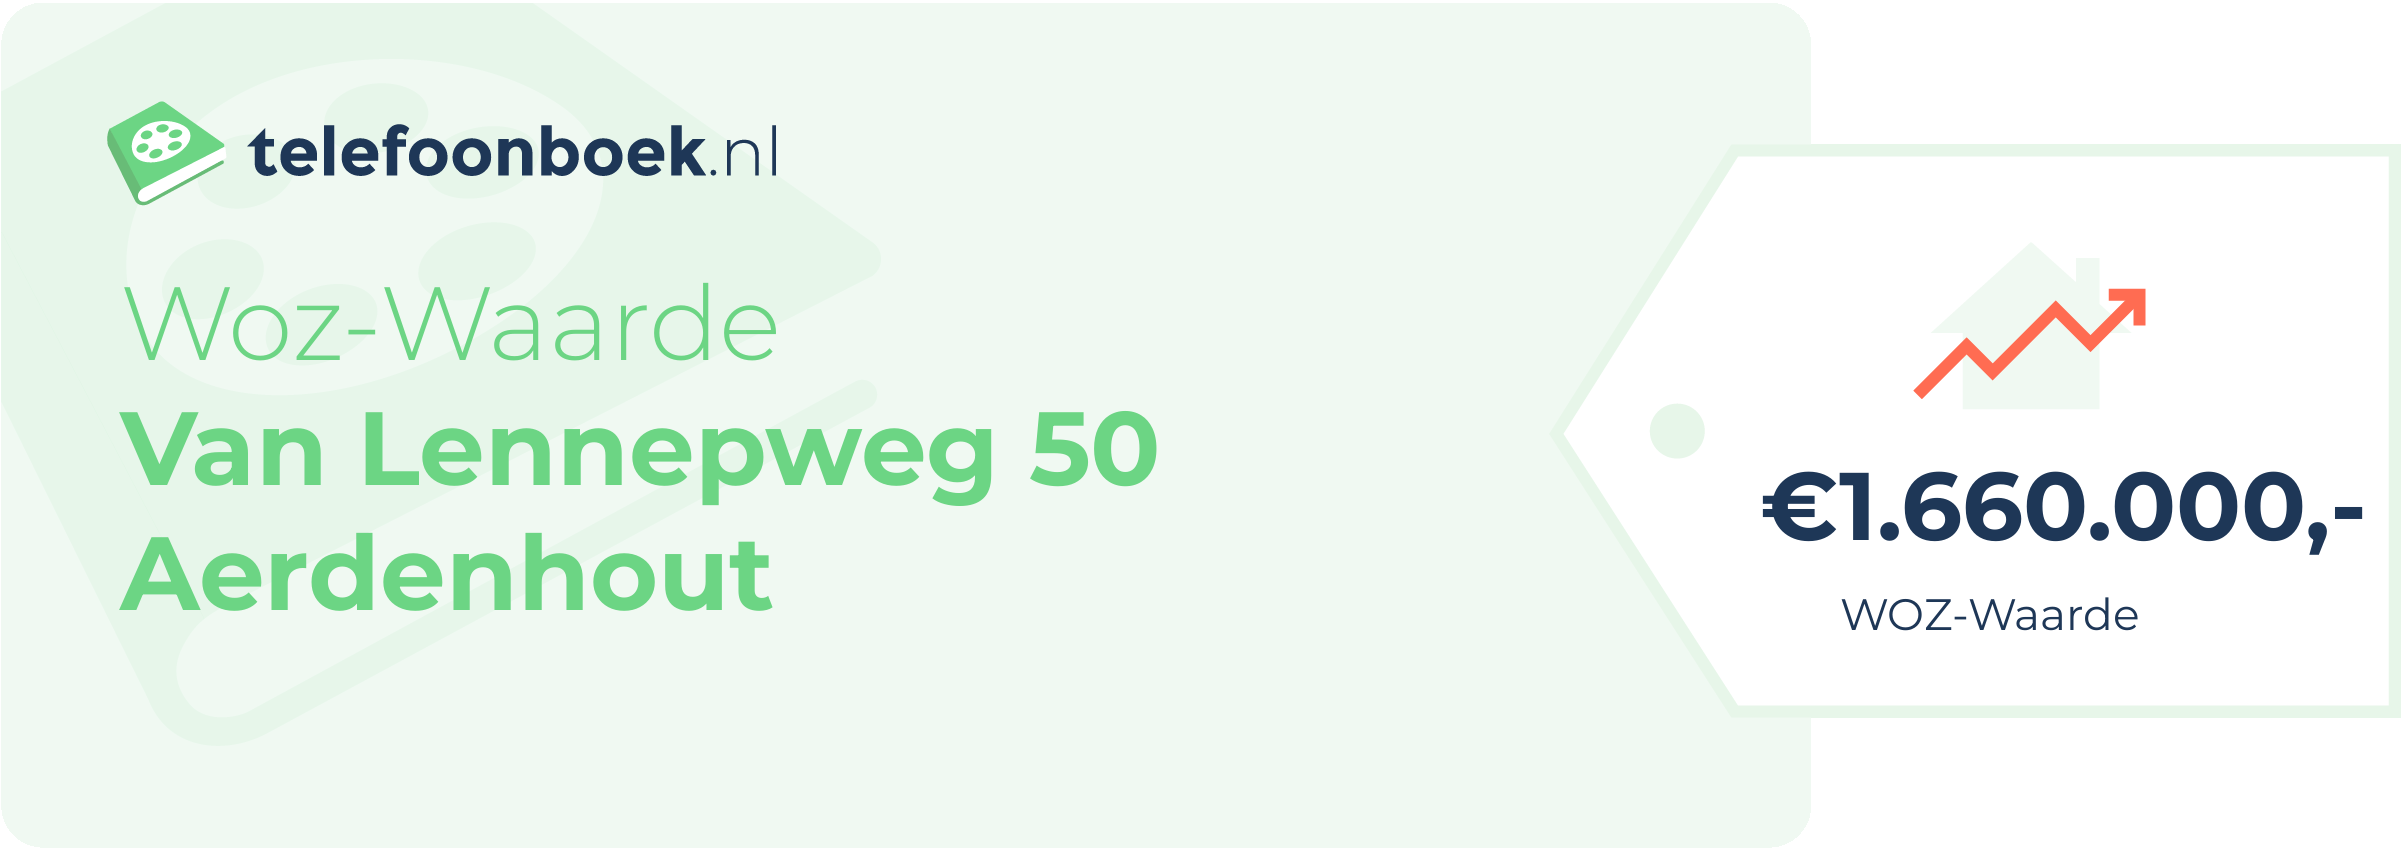 WOZ-waarde Van Lennepweg 50 Aerdenhout